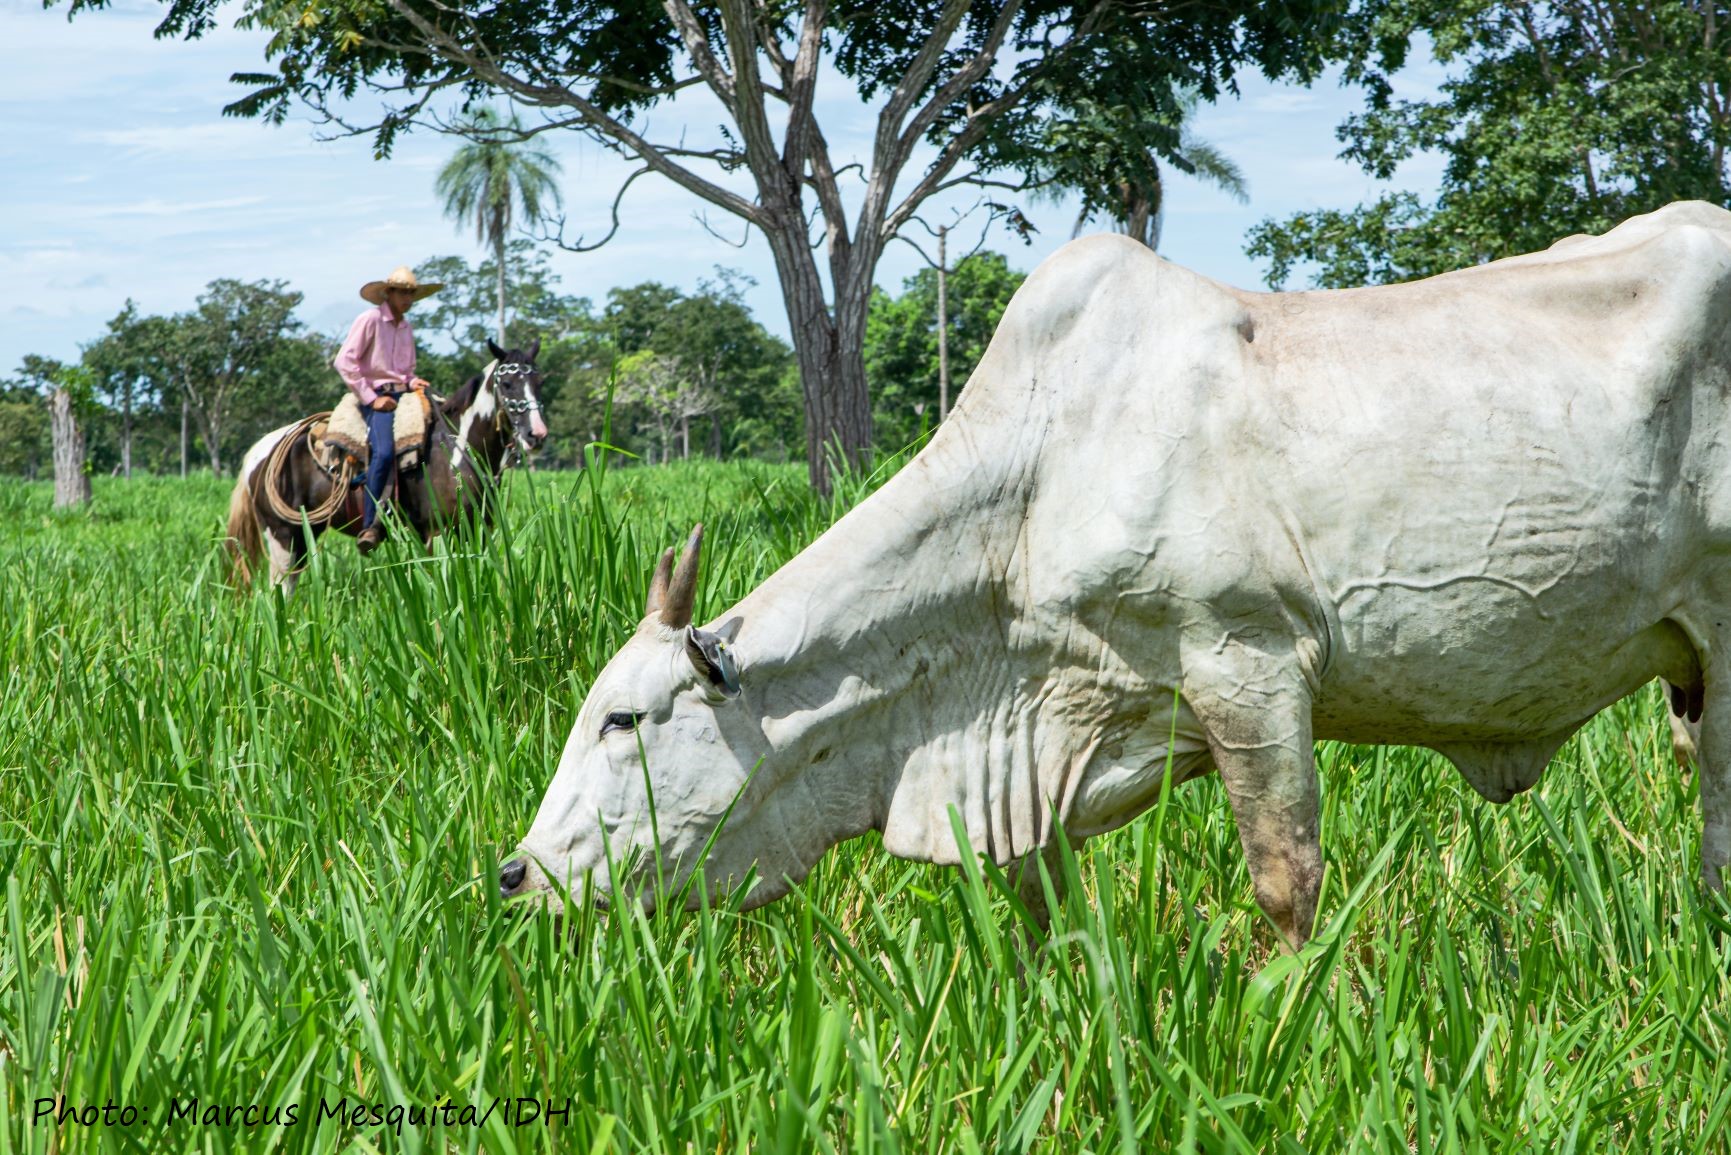 Cattle farmer in Mato Grosso state